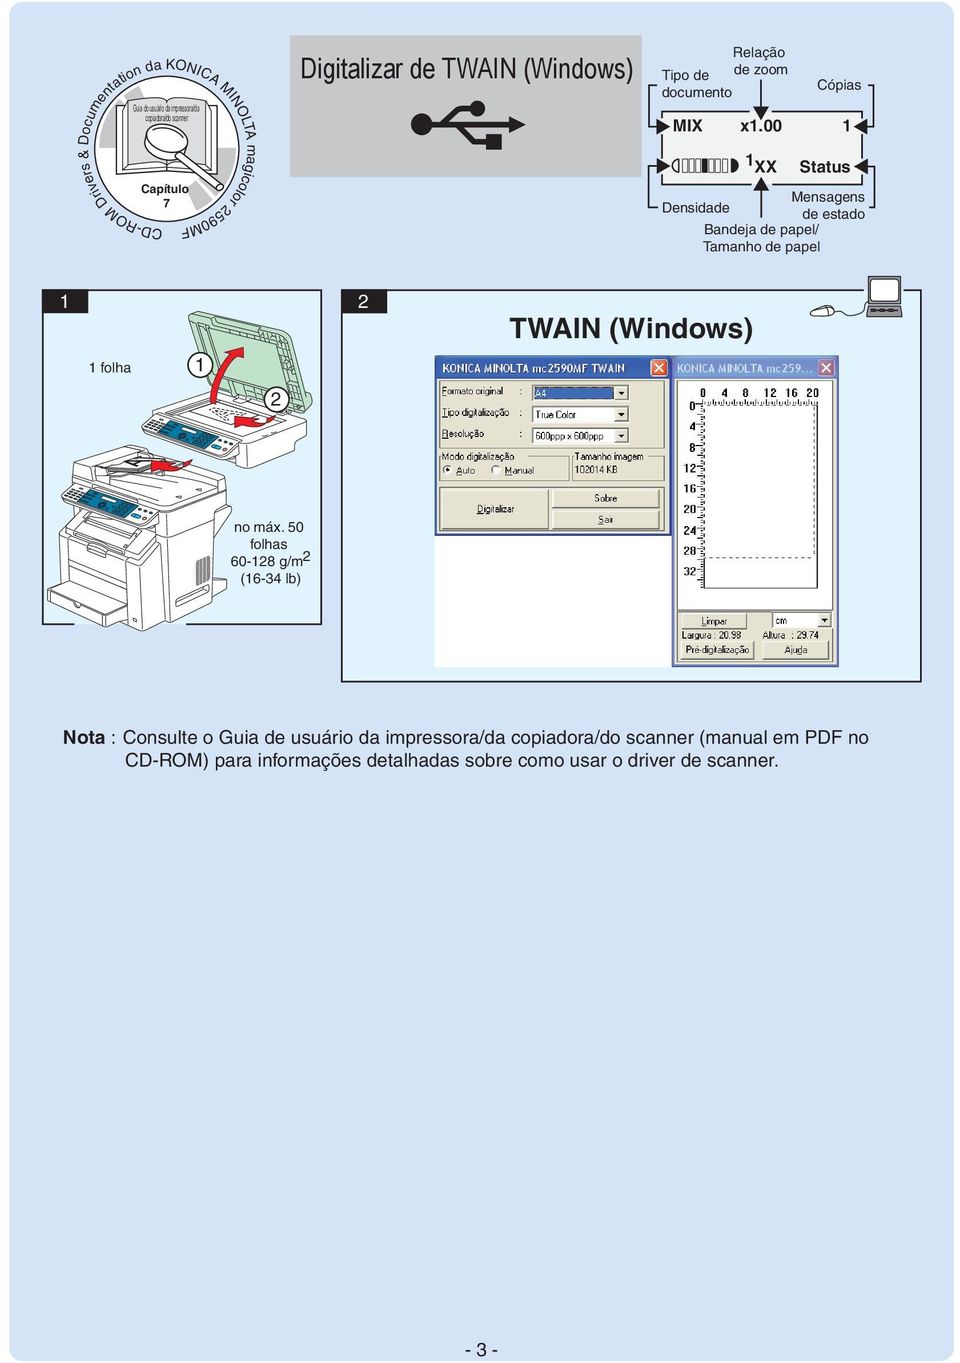 00 folha TWAIN (Windows) 60-8 g/m (6-4 lb) Nota : Consulte o Guia de usuário da